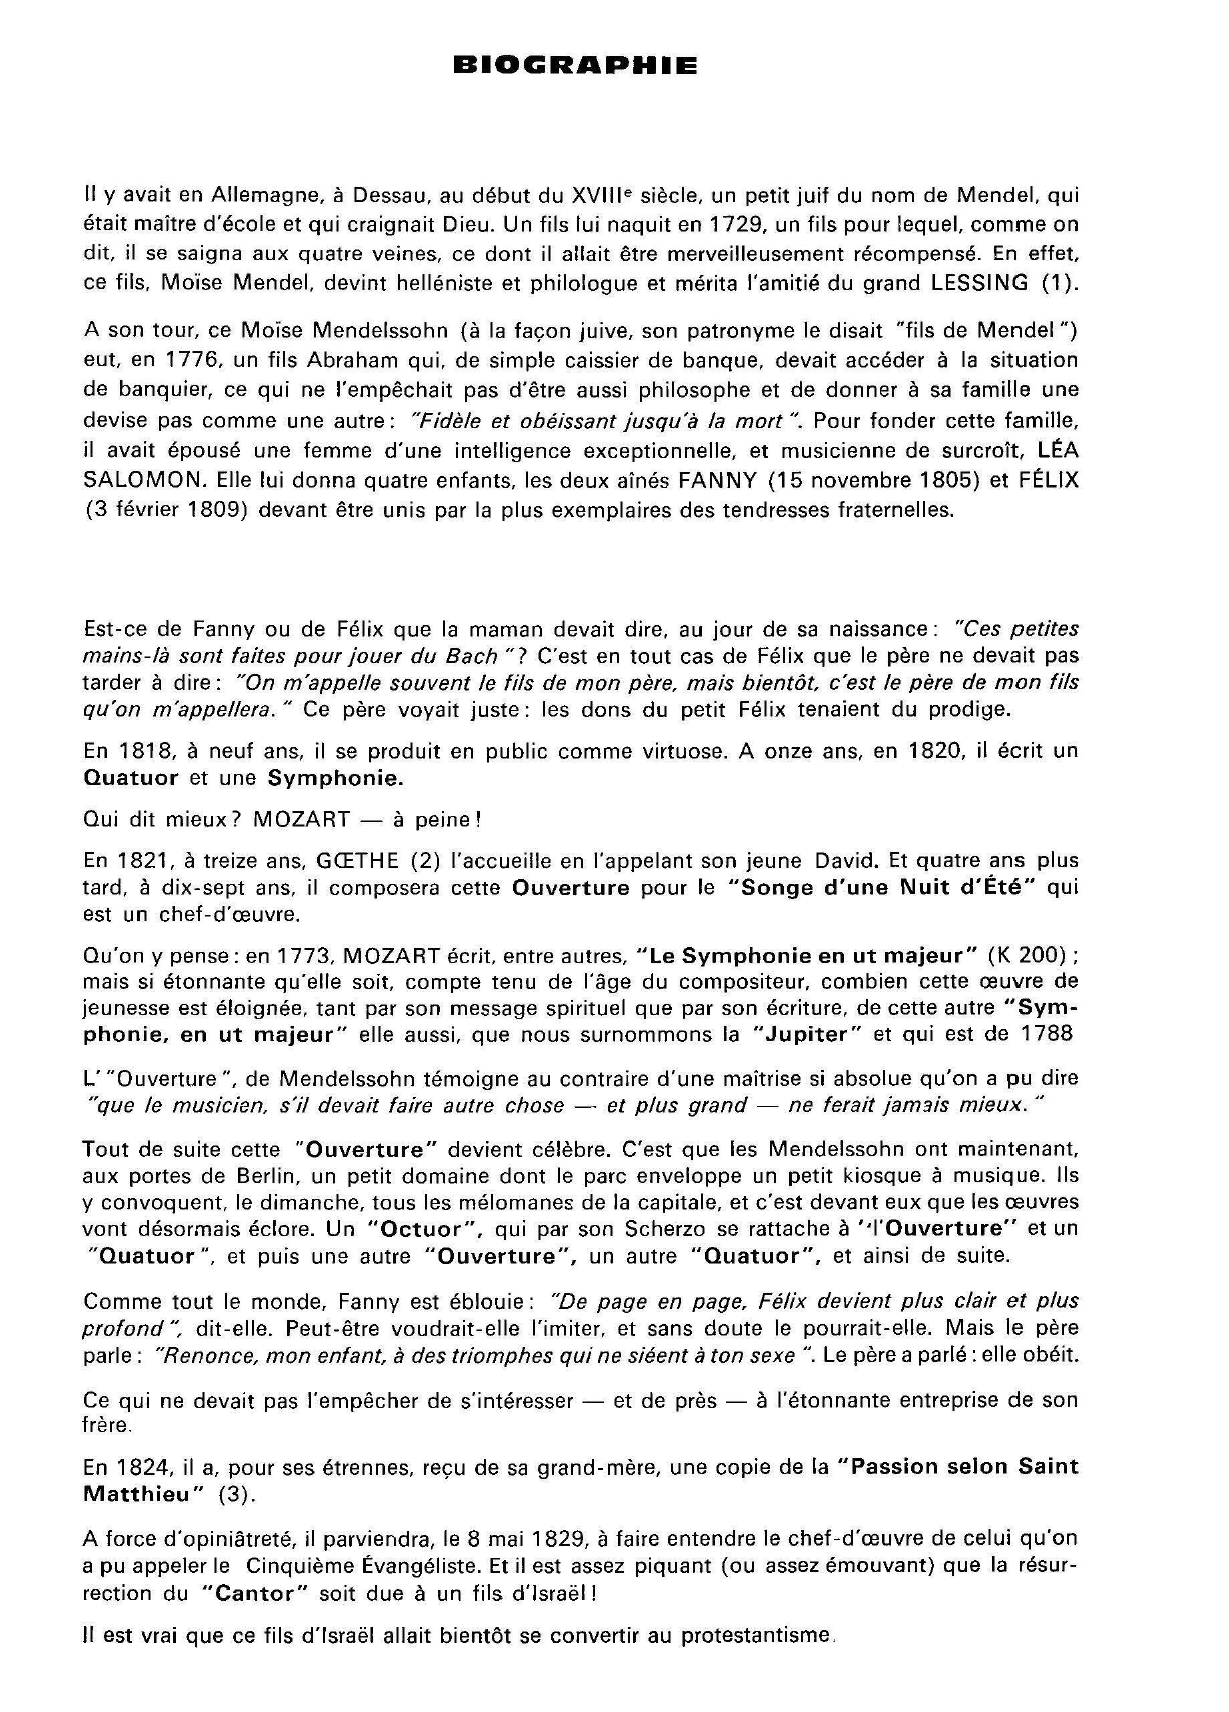 Prévisualisation du document Édouard LALO.